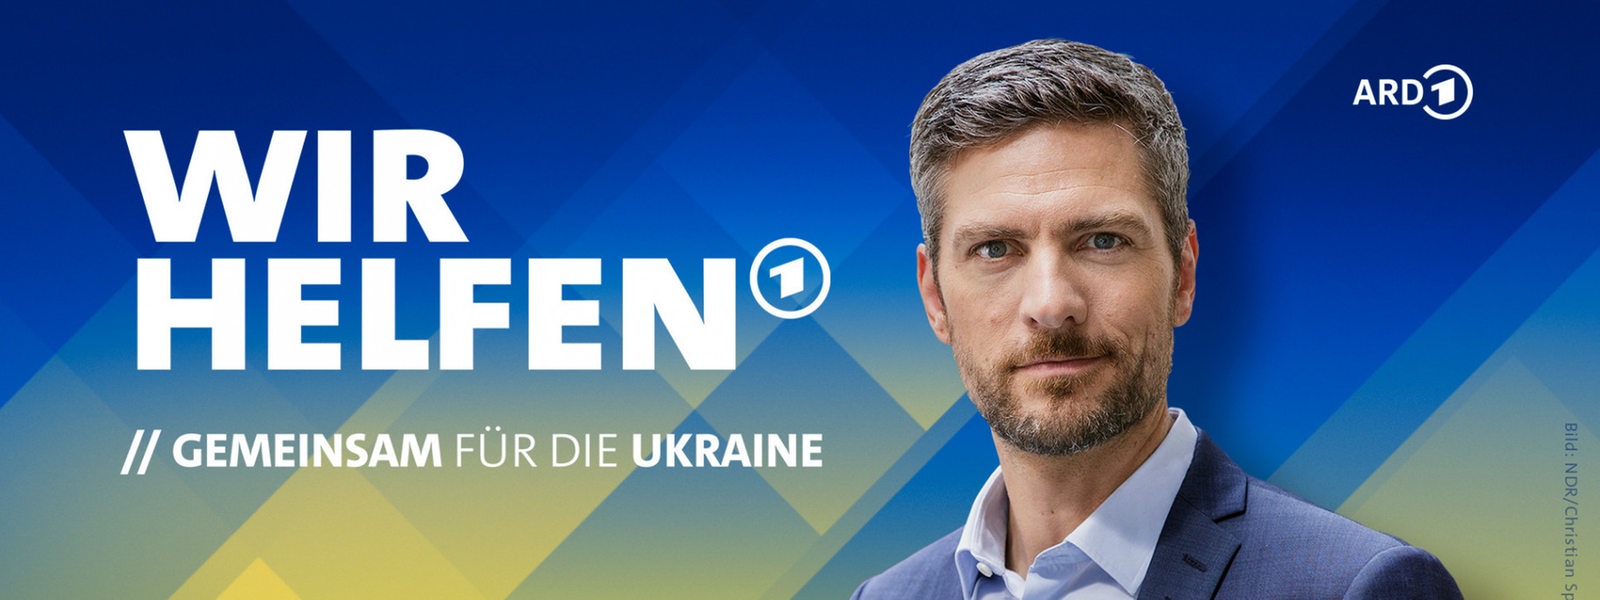 Wir helfen - Gemeinsam für die Ukraine, Ingo Zamperoni